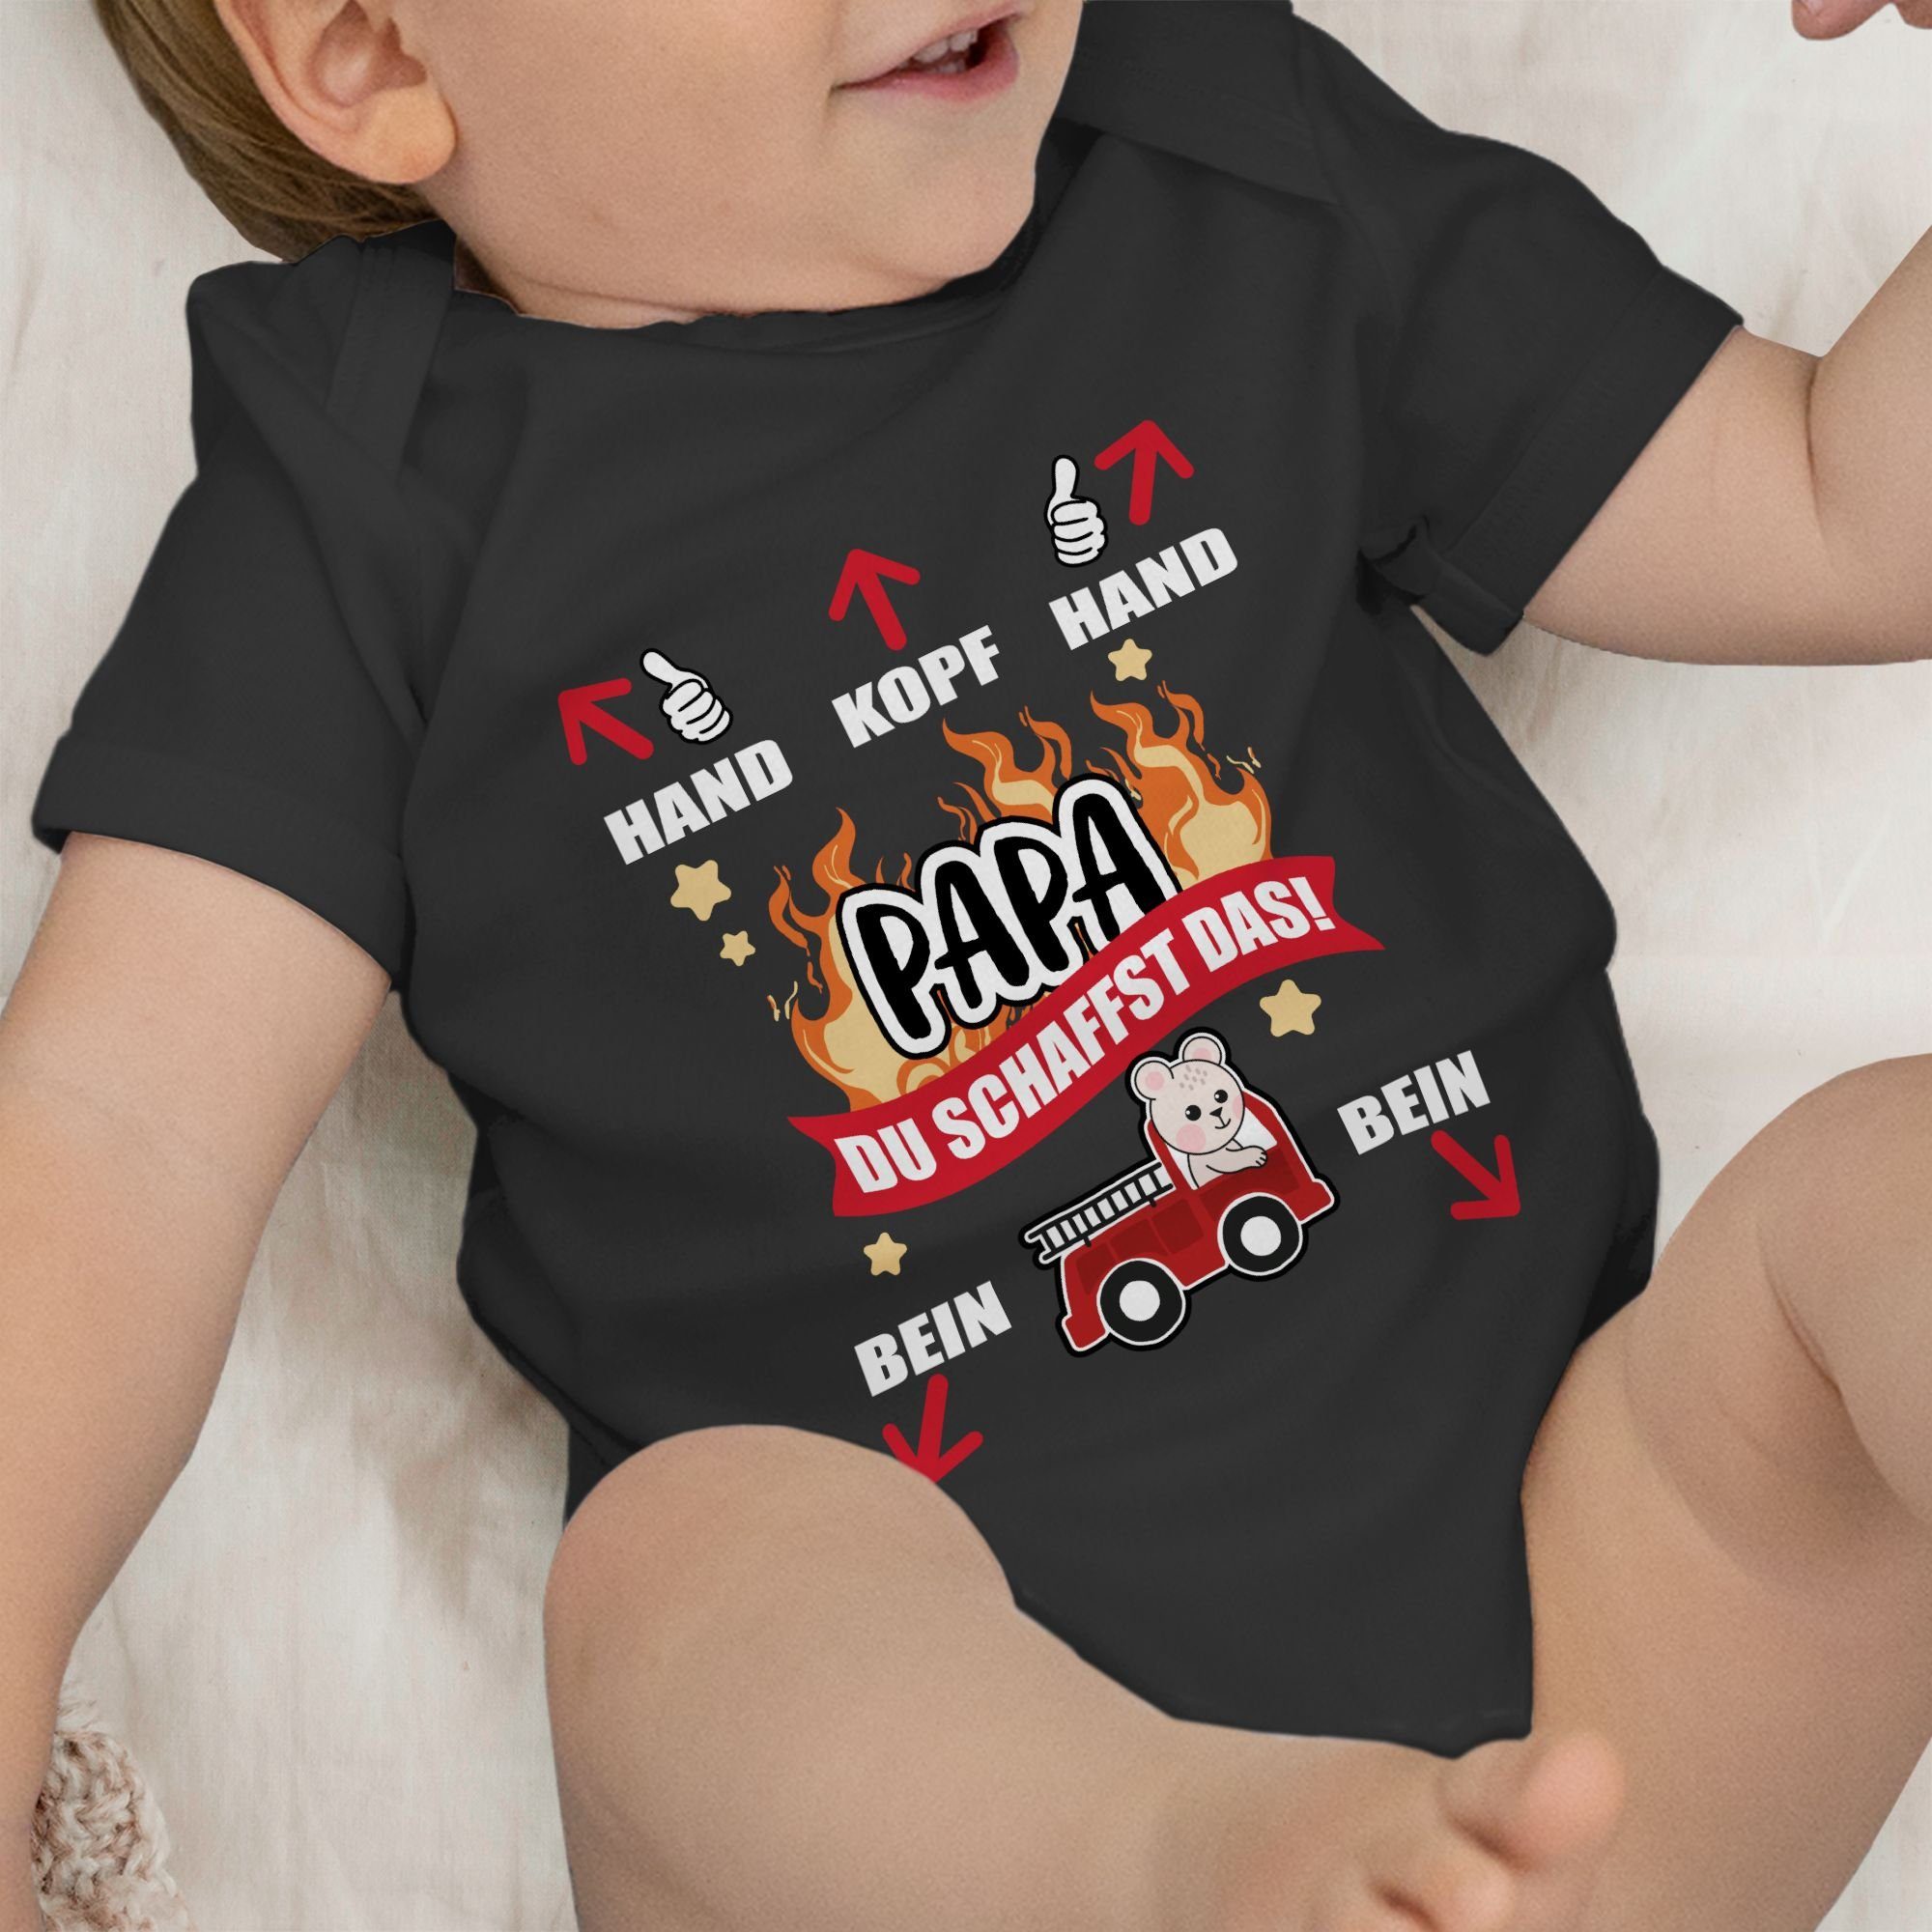 du weiß Feuerwehr Geschenk Shirtracer das 2 - schaffst Papa Vatertag Schwarz Baby Shirtbody -